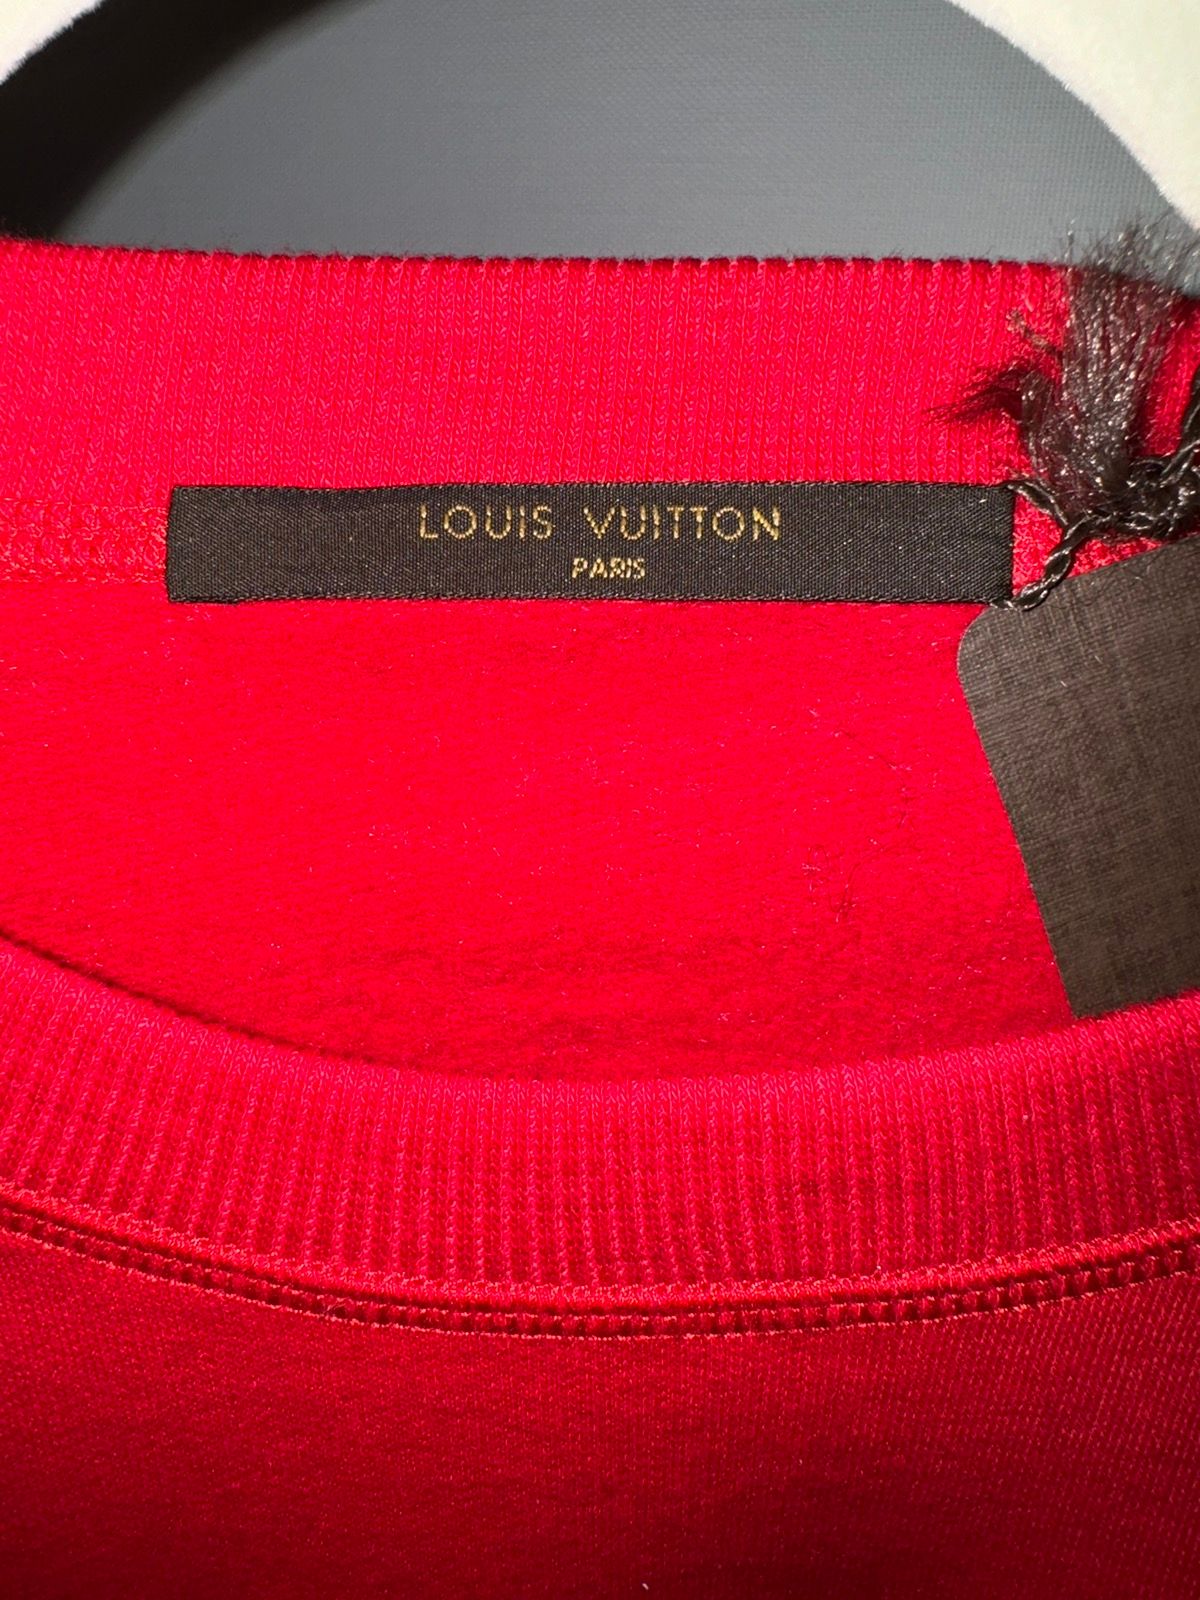 Supreme Louis Vuitton X Supreme Crewneck Size US S / EU 44-46 / 1 - 4 Thumbnail